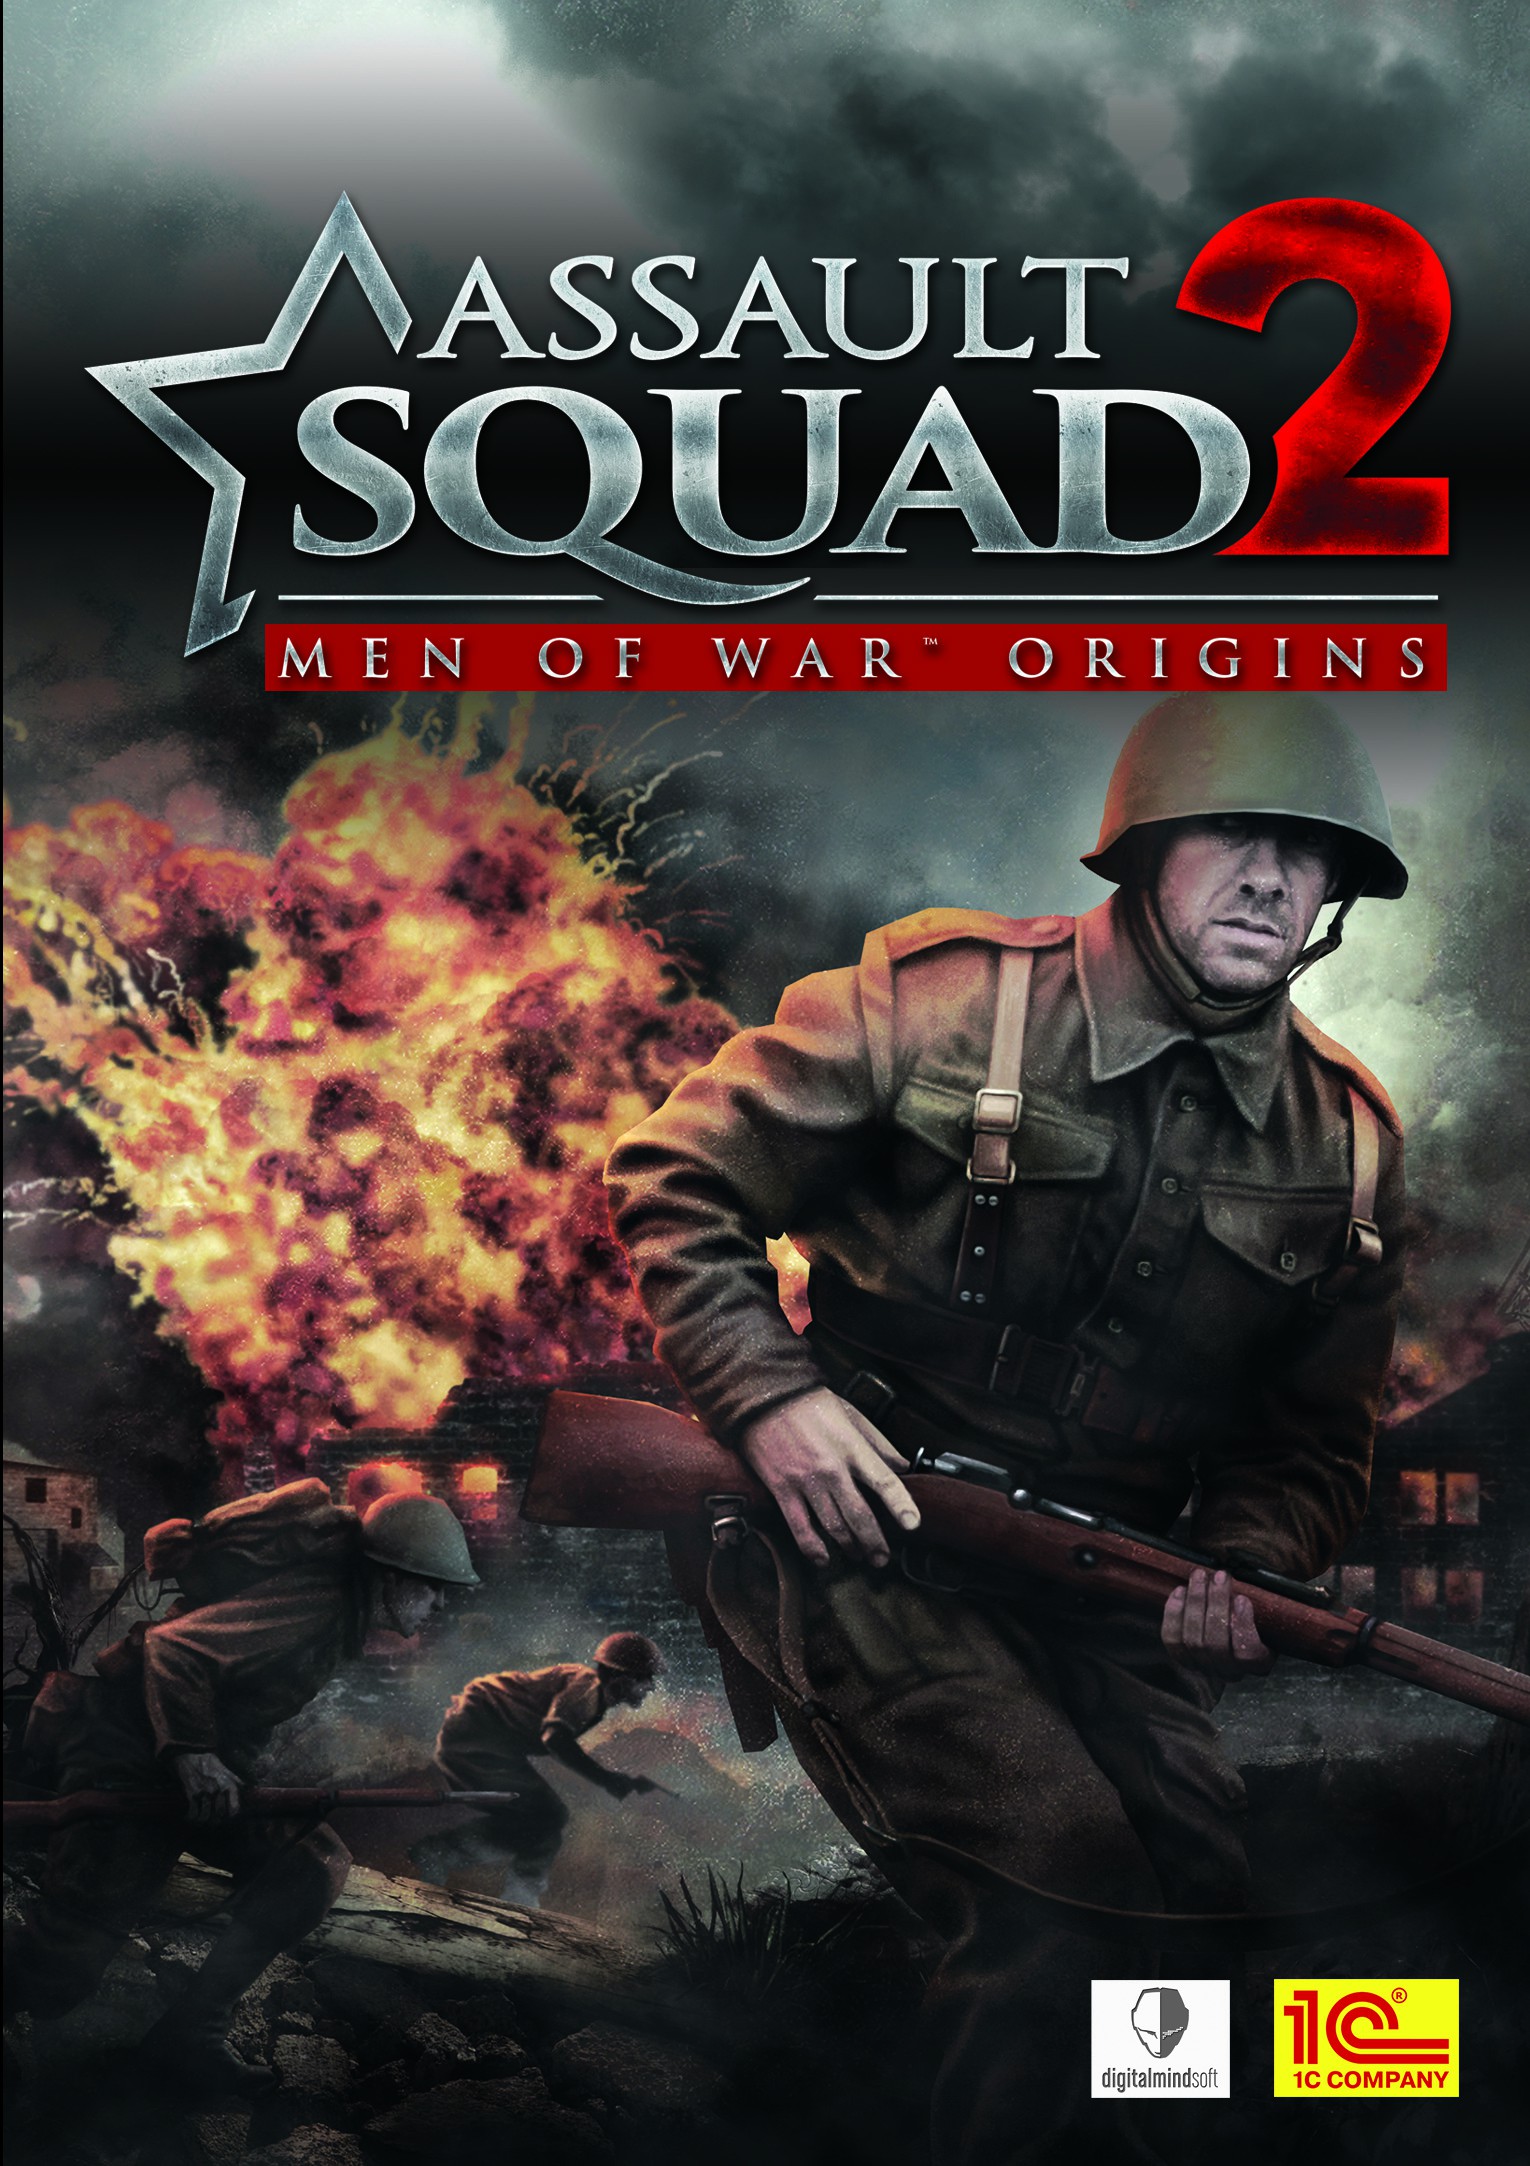 men of war assault squad 2 download for free